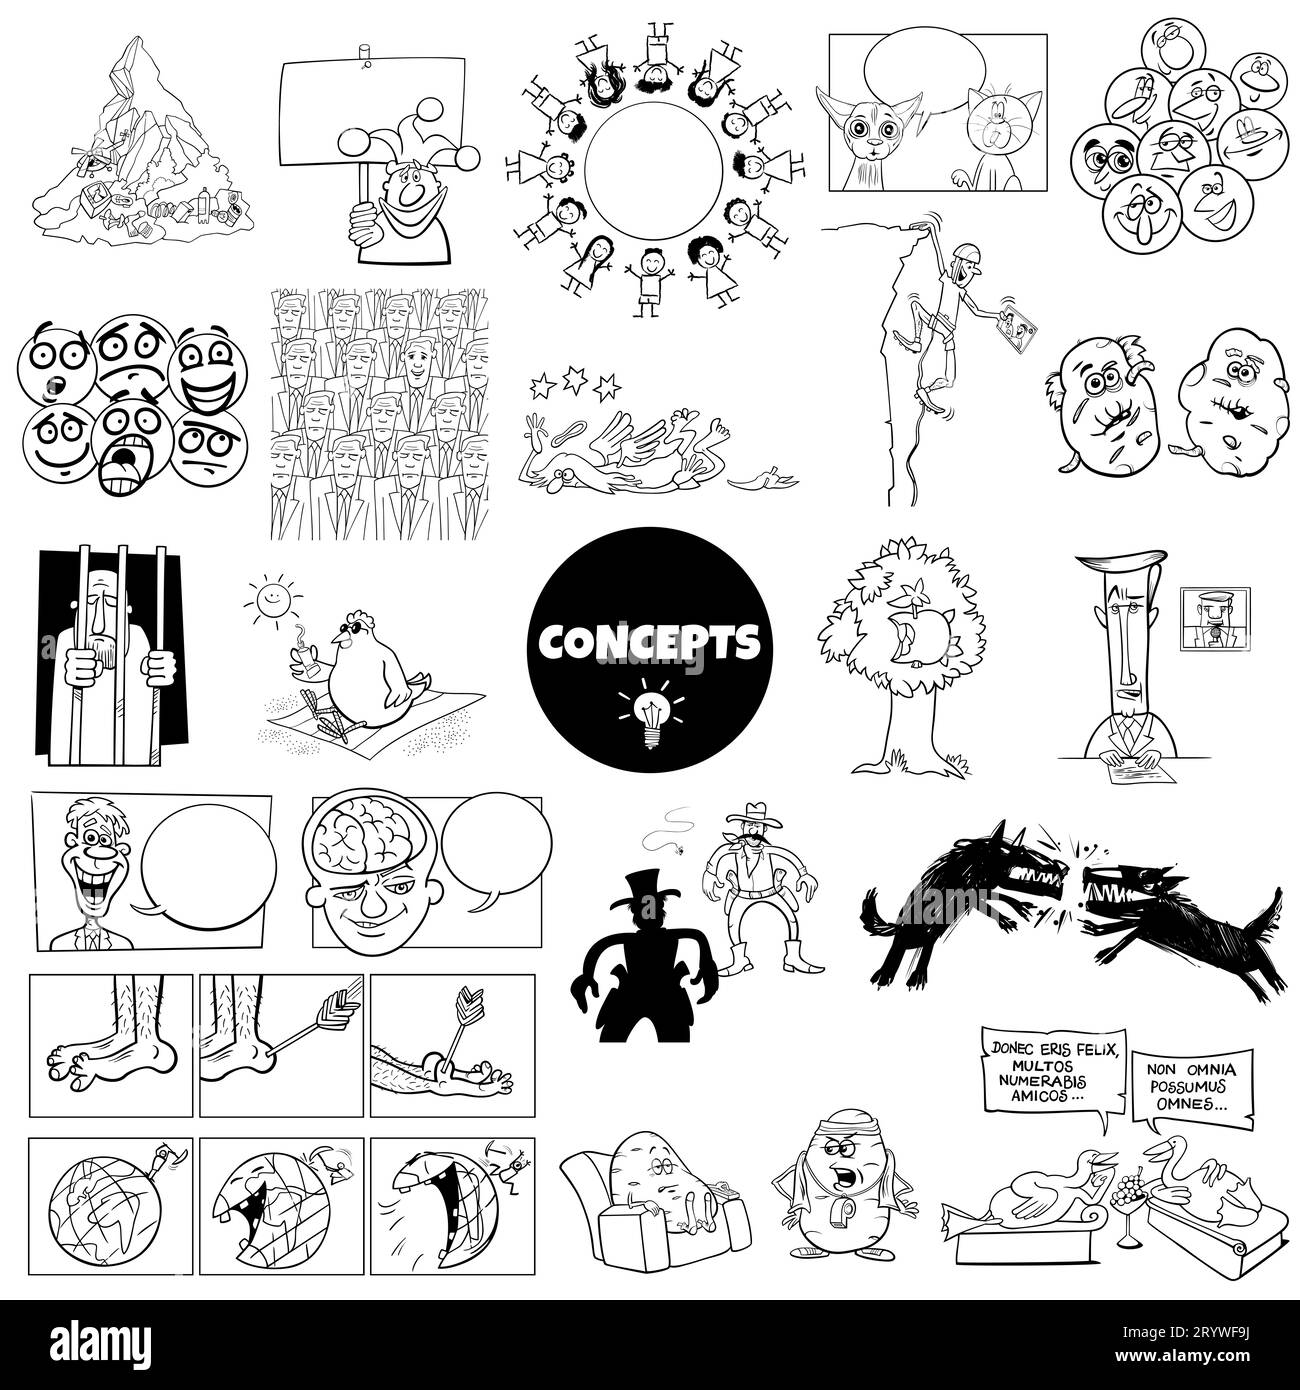 Ensemble d'ilustration noir et blanc de concepts humoristiques de dessins animés ou de métaphores et d'idées avec des personnages comiques Banque D'Images